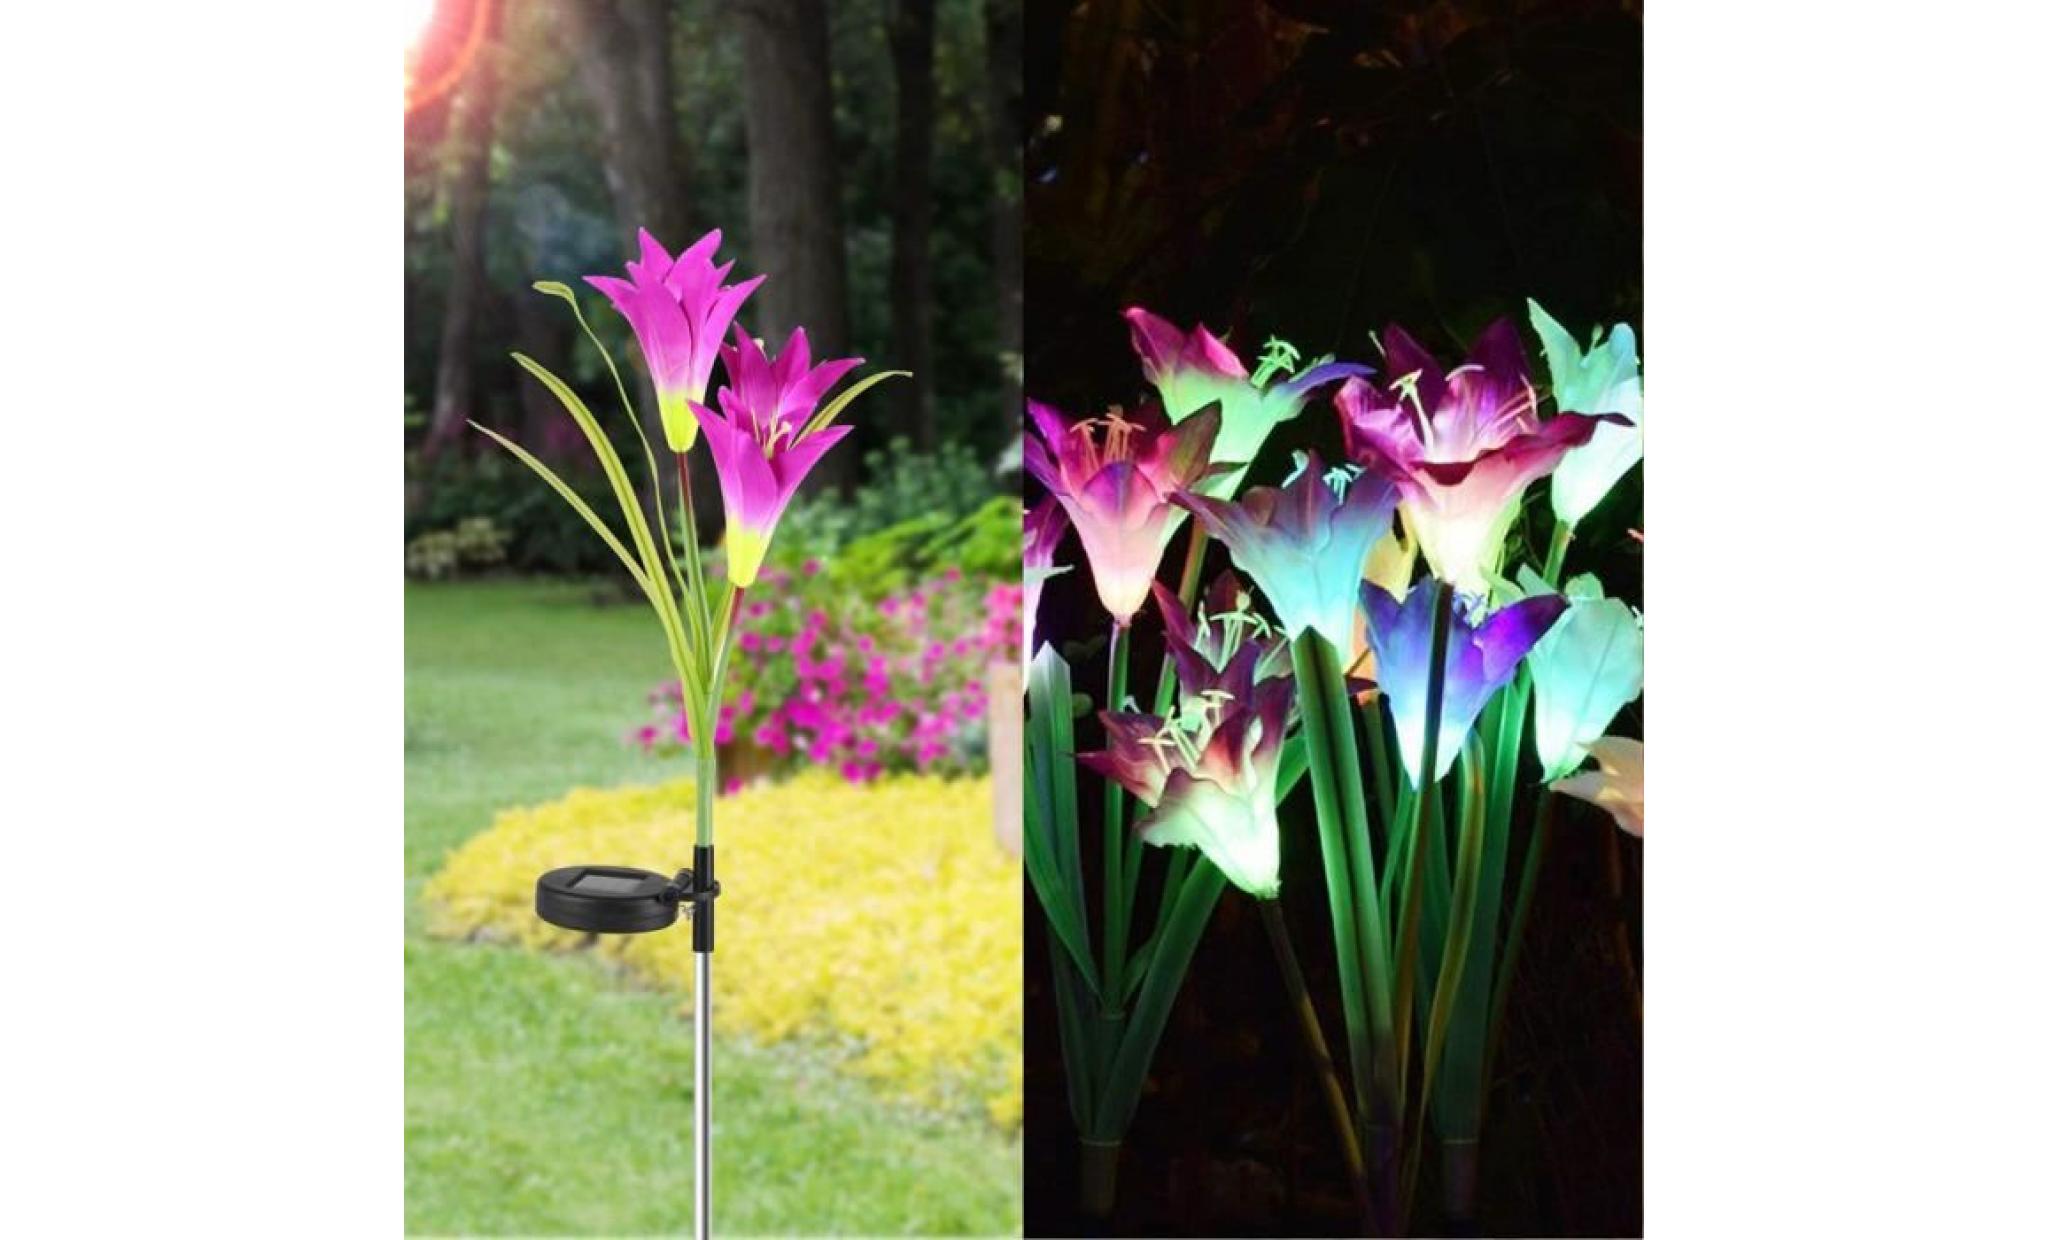 borne solaire 2 pcs fleur de lys jardin solaire actionné pieu lumières lumières fleurs artificielles led lumière #la 133